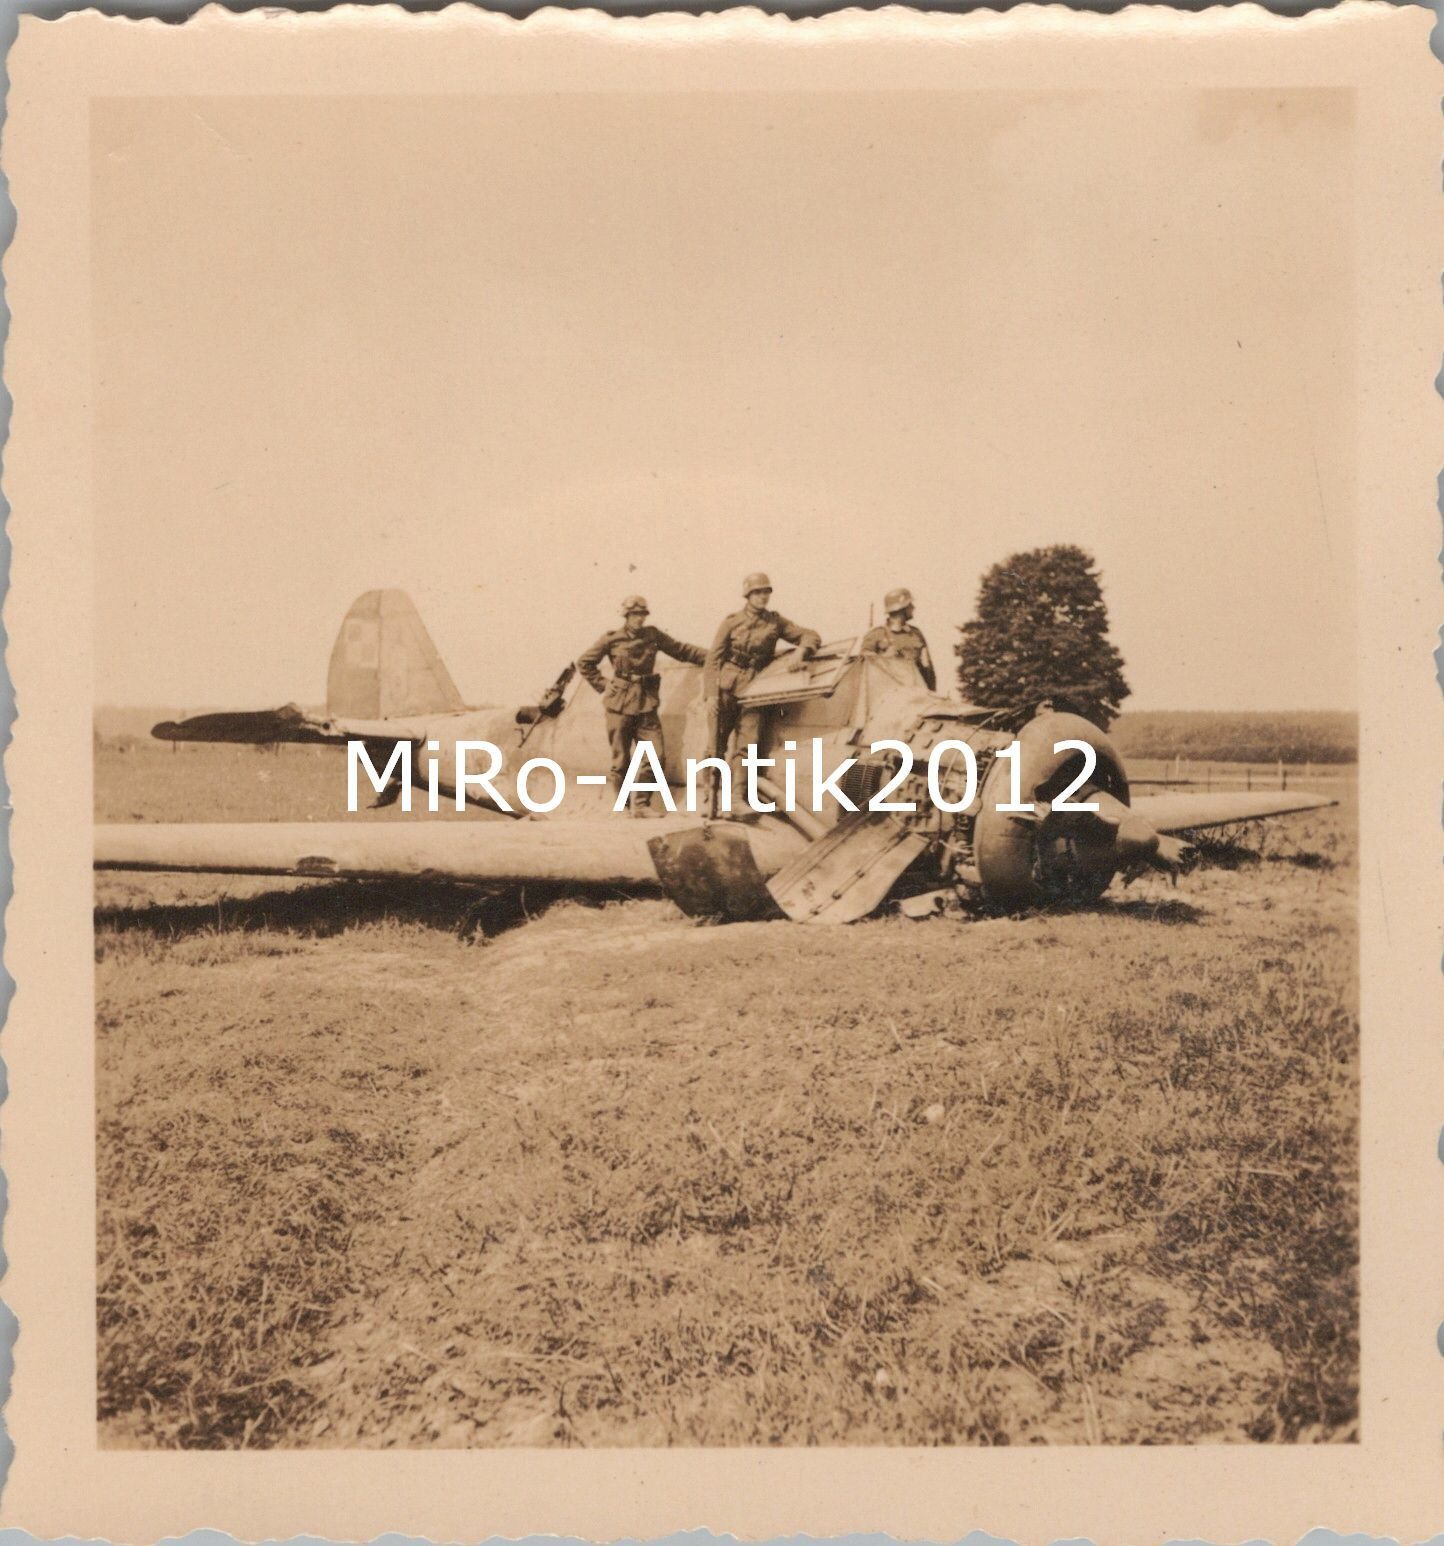 Bild 1 - Foto, Wk2, Wehrmacht, Soldaten checken ein Jagdflugzeug der Polen (N)50292